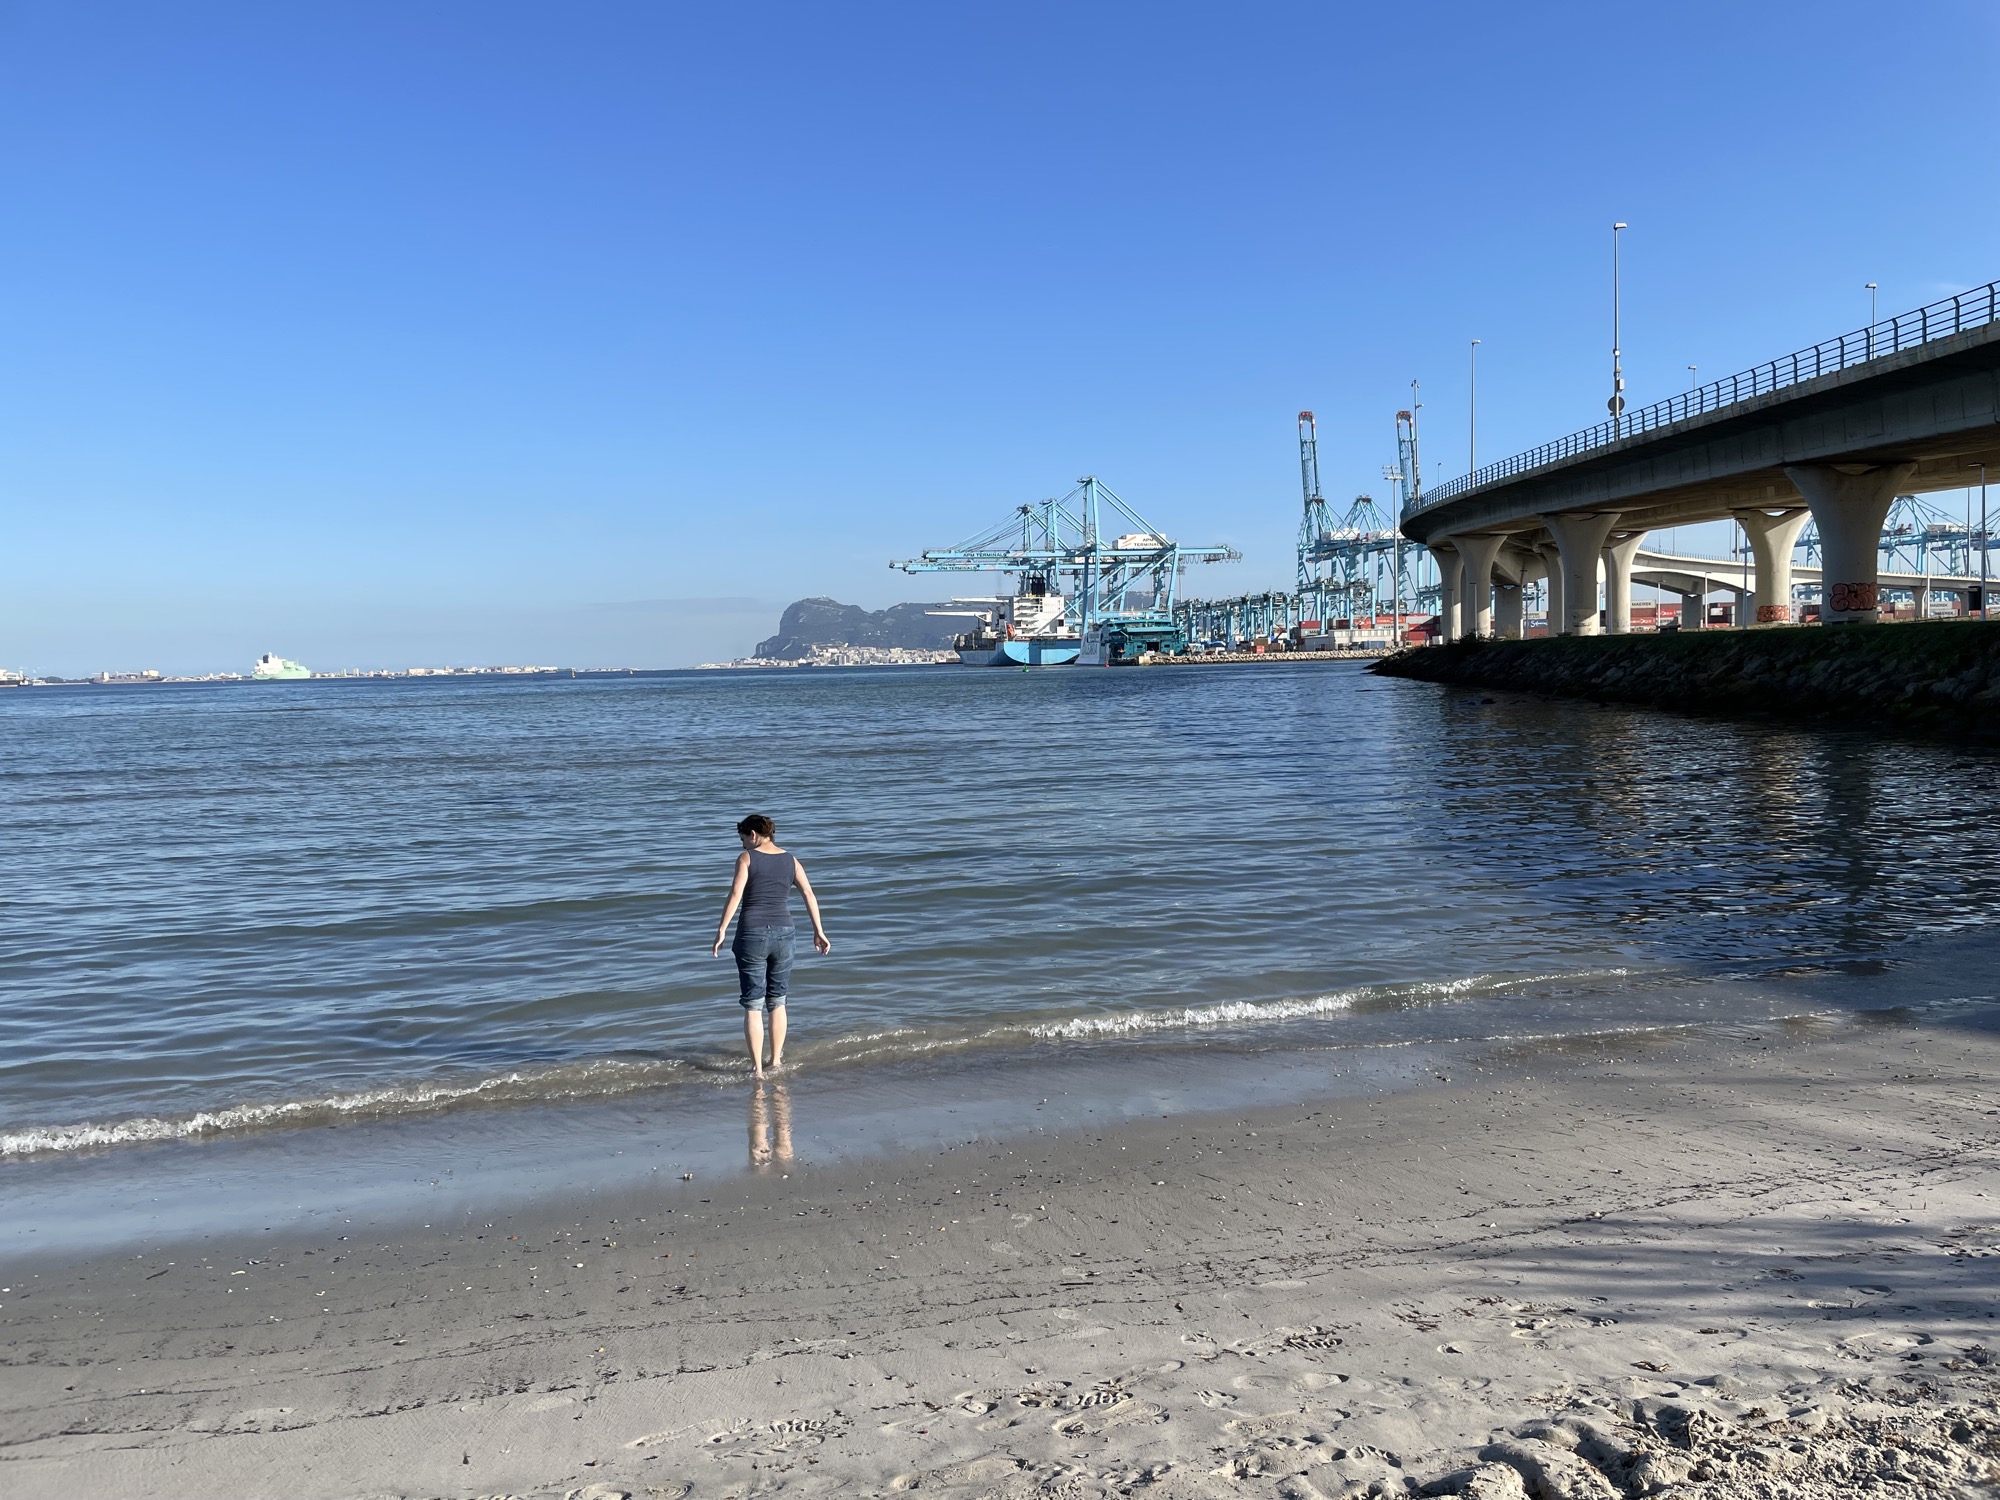 am Strand von Algeciras, eine Person steht mit bis zu den Knien aufgekrempelten Hosen im seichten Wasser, rechts führt eine Brücke zum Containerhafen, ganz hinten mittig im Bild ist der Felsen von Gibraltar zu sehen